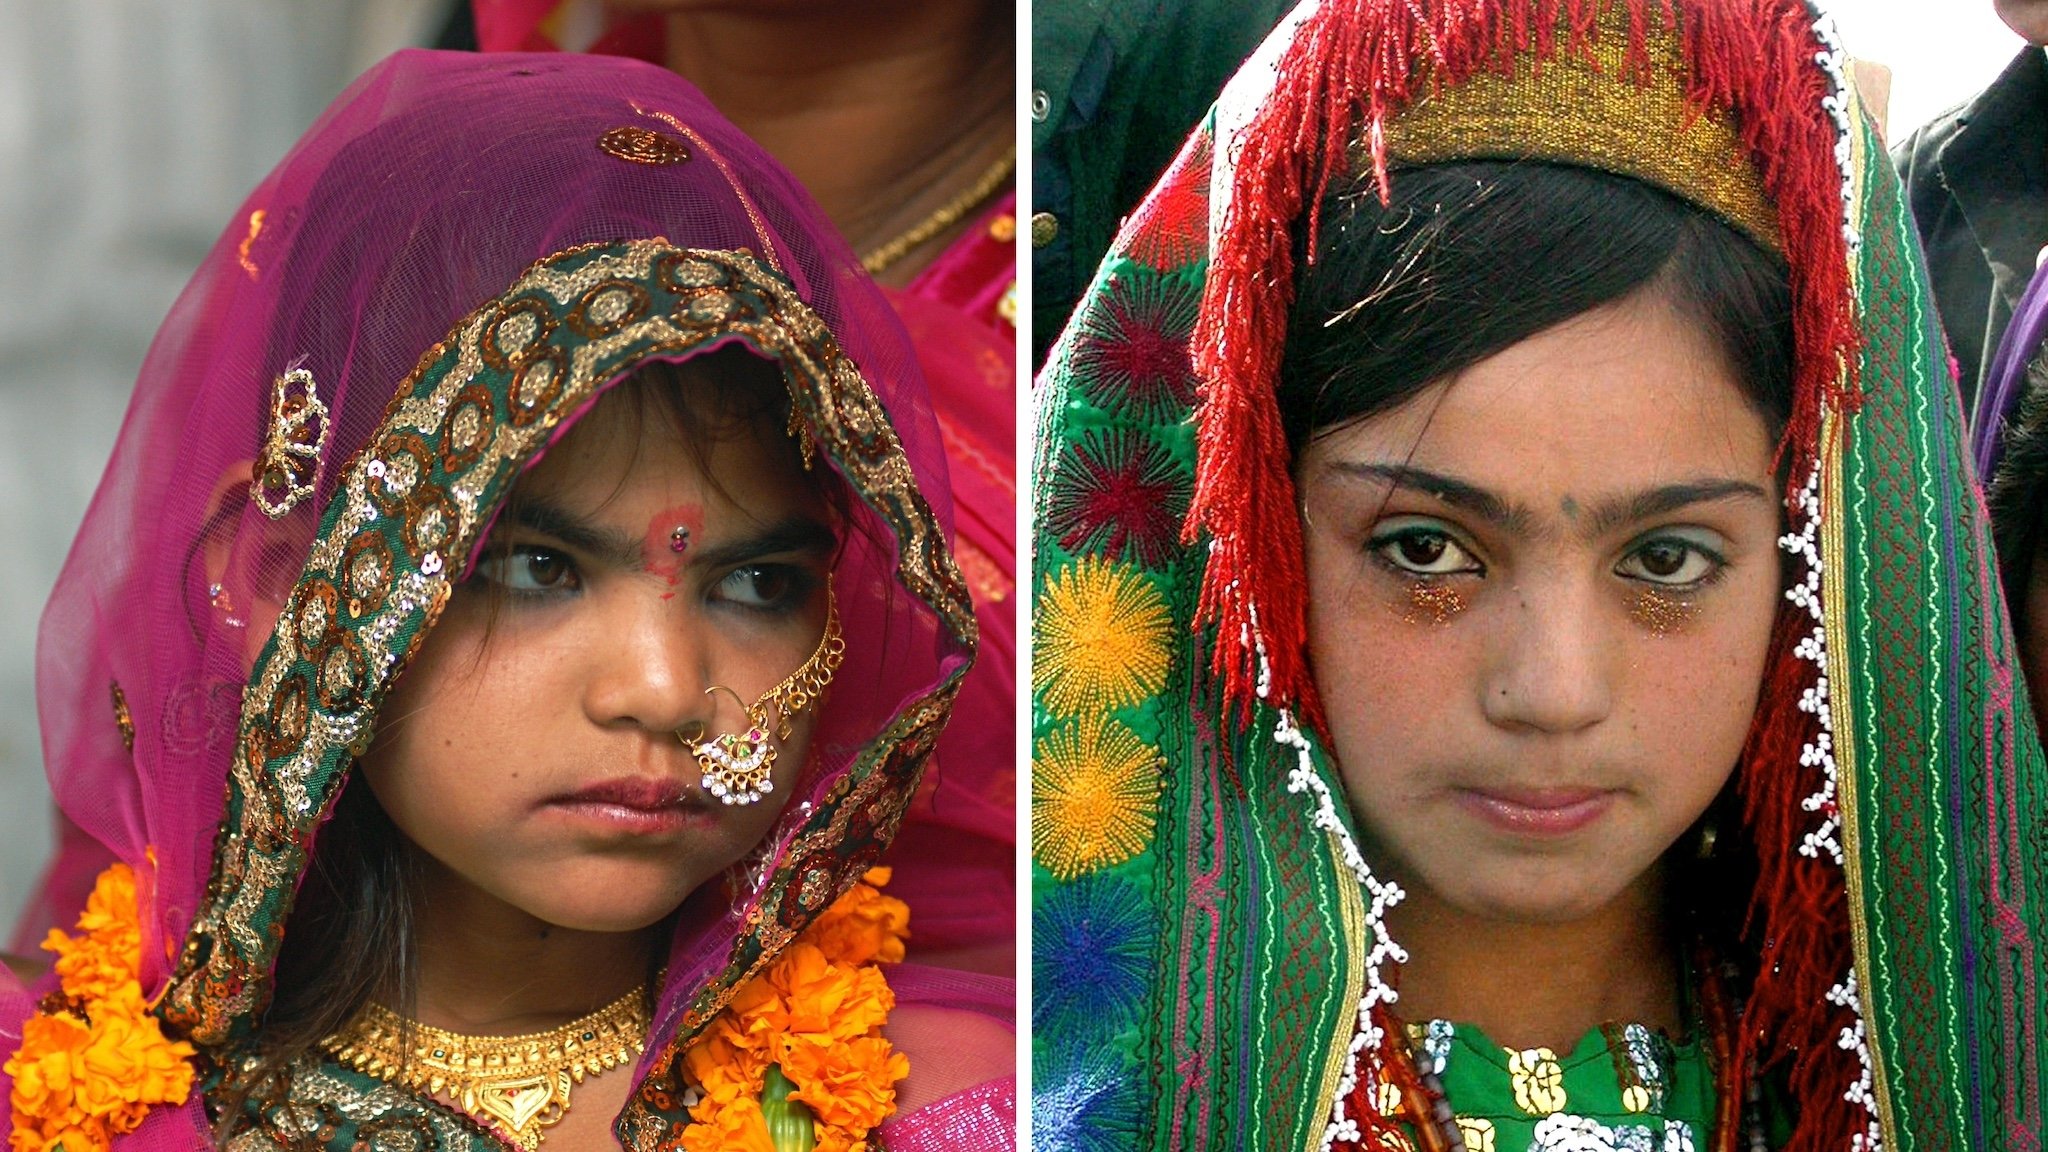 Brautschmuck 12-jähriger Mädchen bei Hochzeiten in Indien (links) bzw. Afghanistan (rechts)